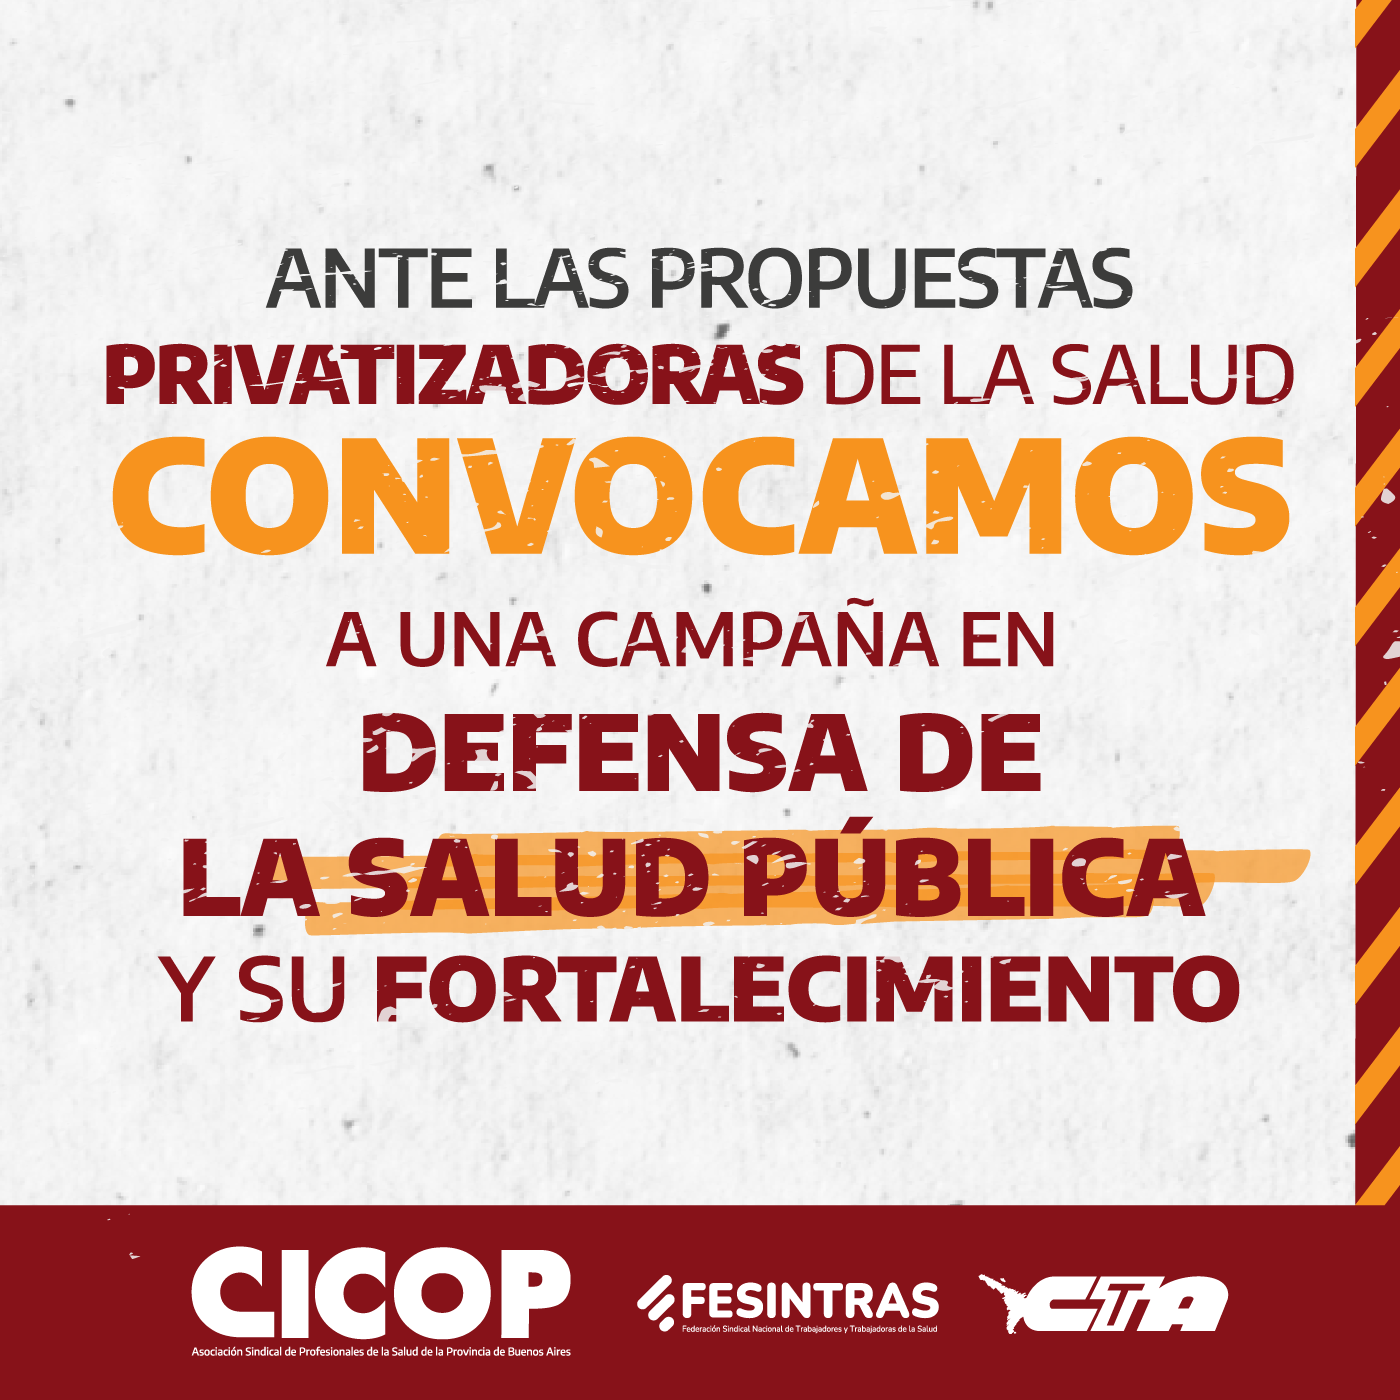 CICOP lanzó una campaña contra las propuestas de privatización del sector público y la eliminación de derechos laborales conquistados